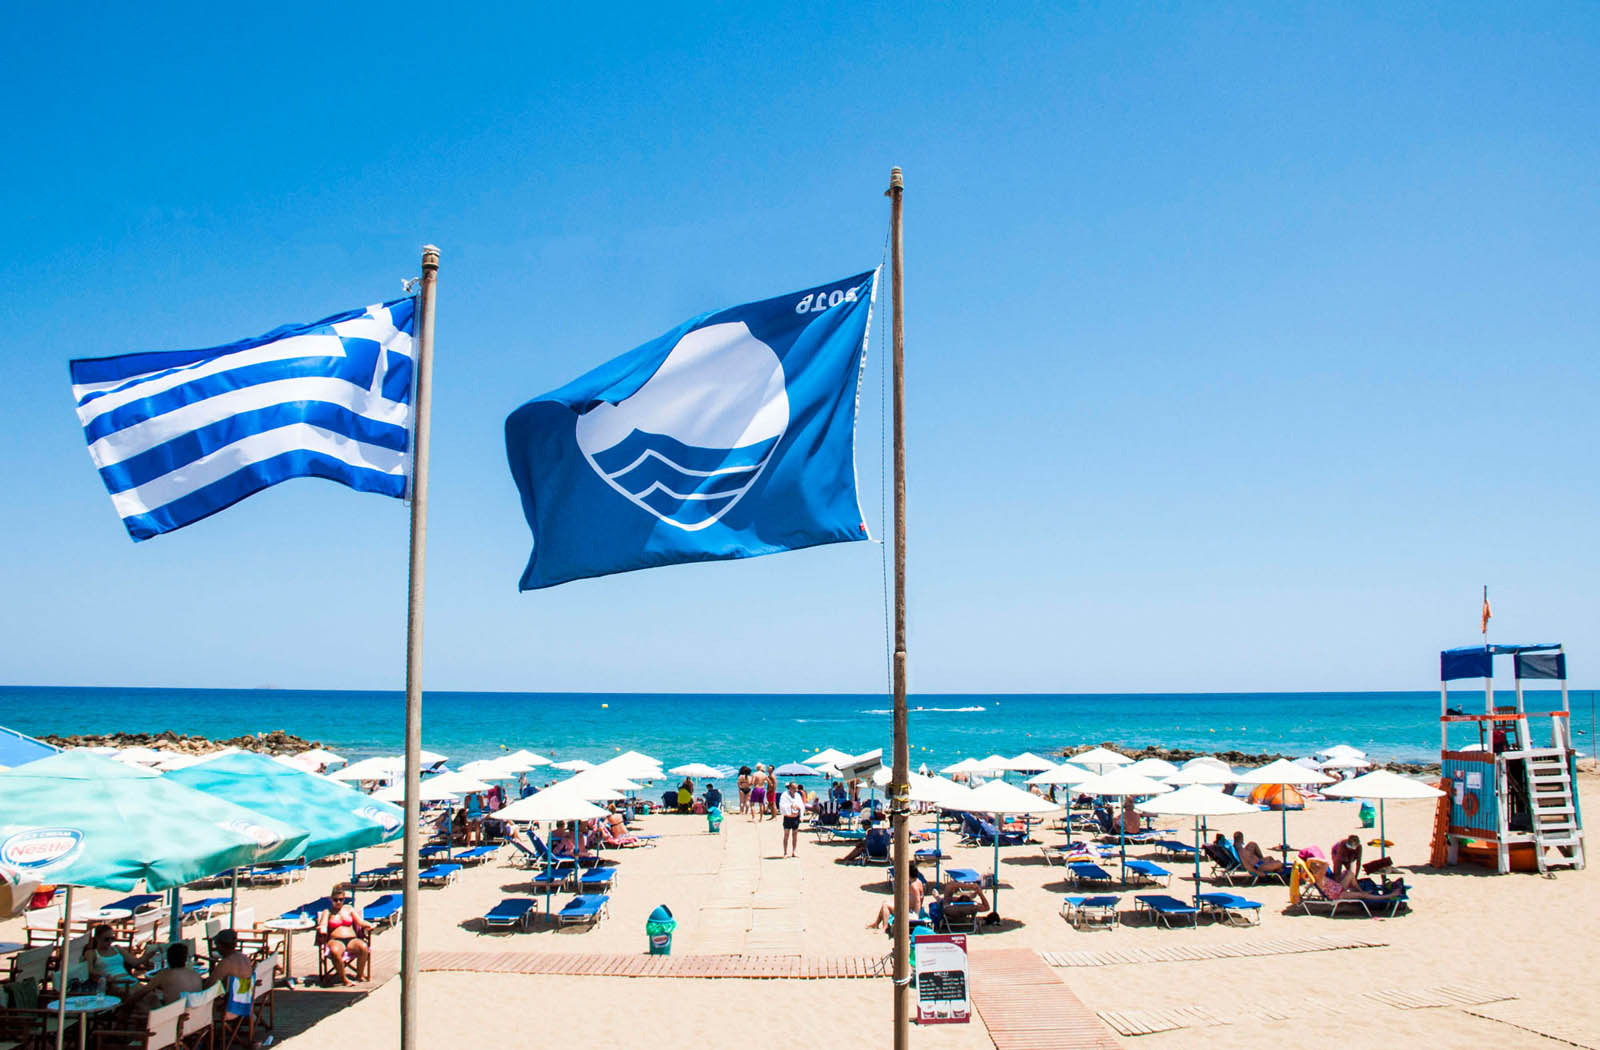 Οι παραλίες της Πάφου που εξασφάλισαν τη γαλάζια σημαία - Εξαιρετικής ποιότητας τα νερά